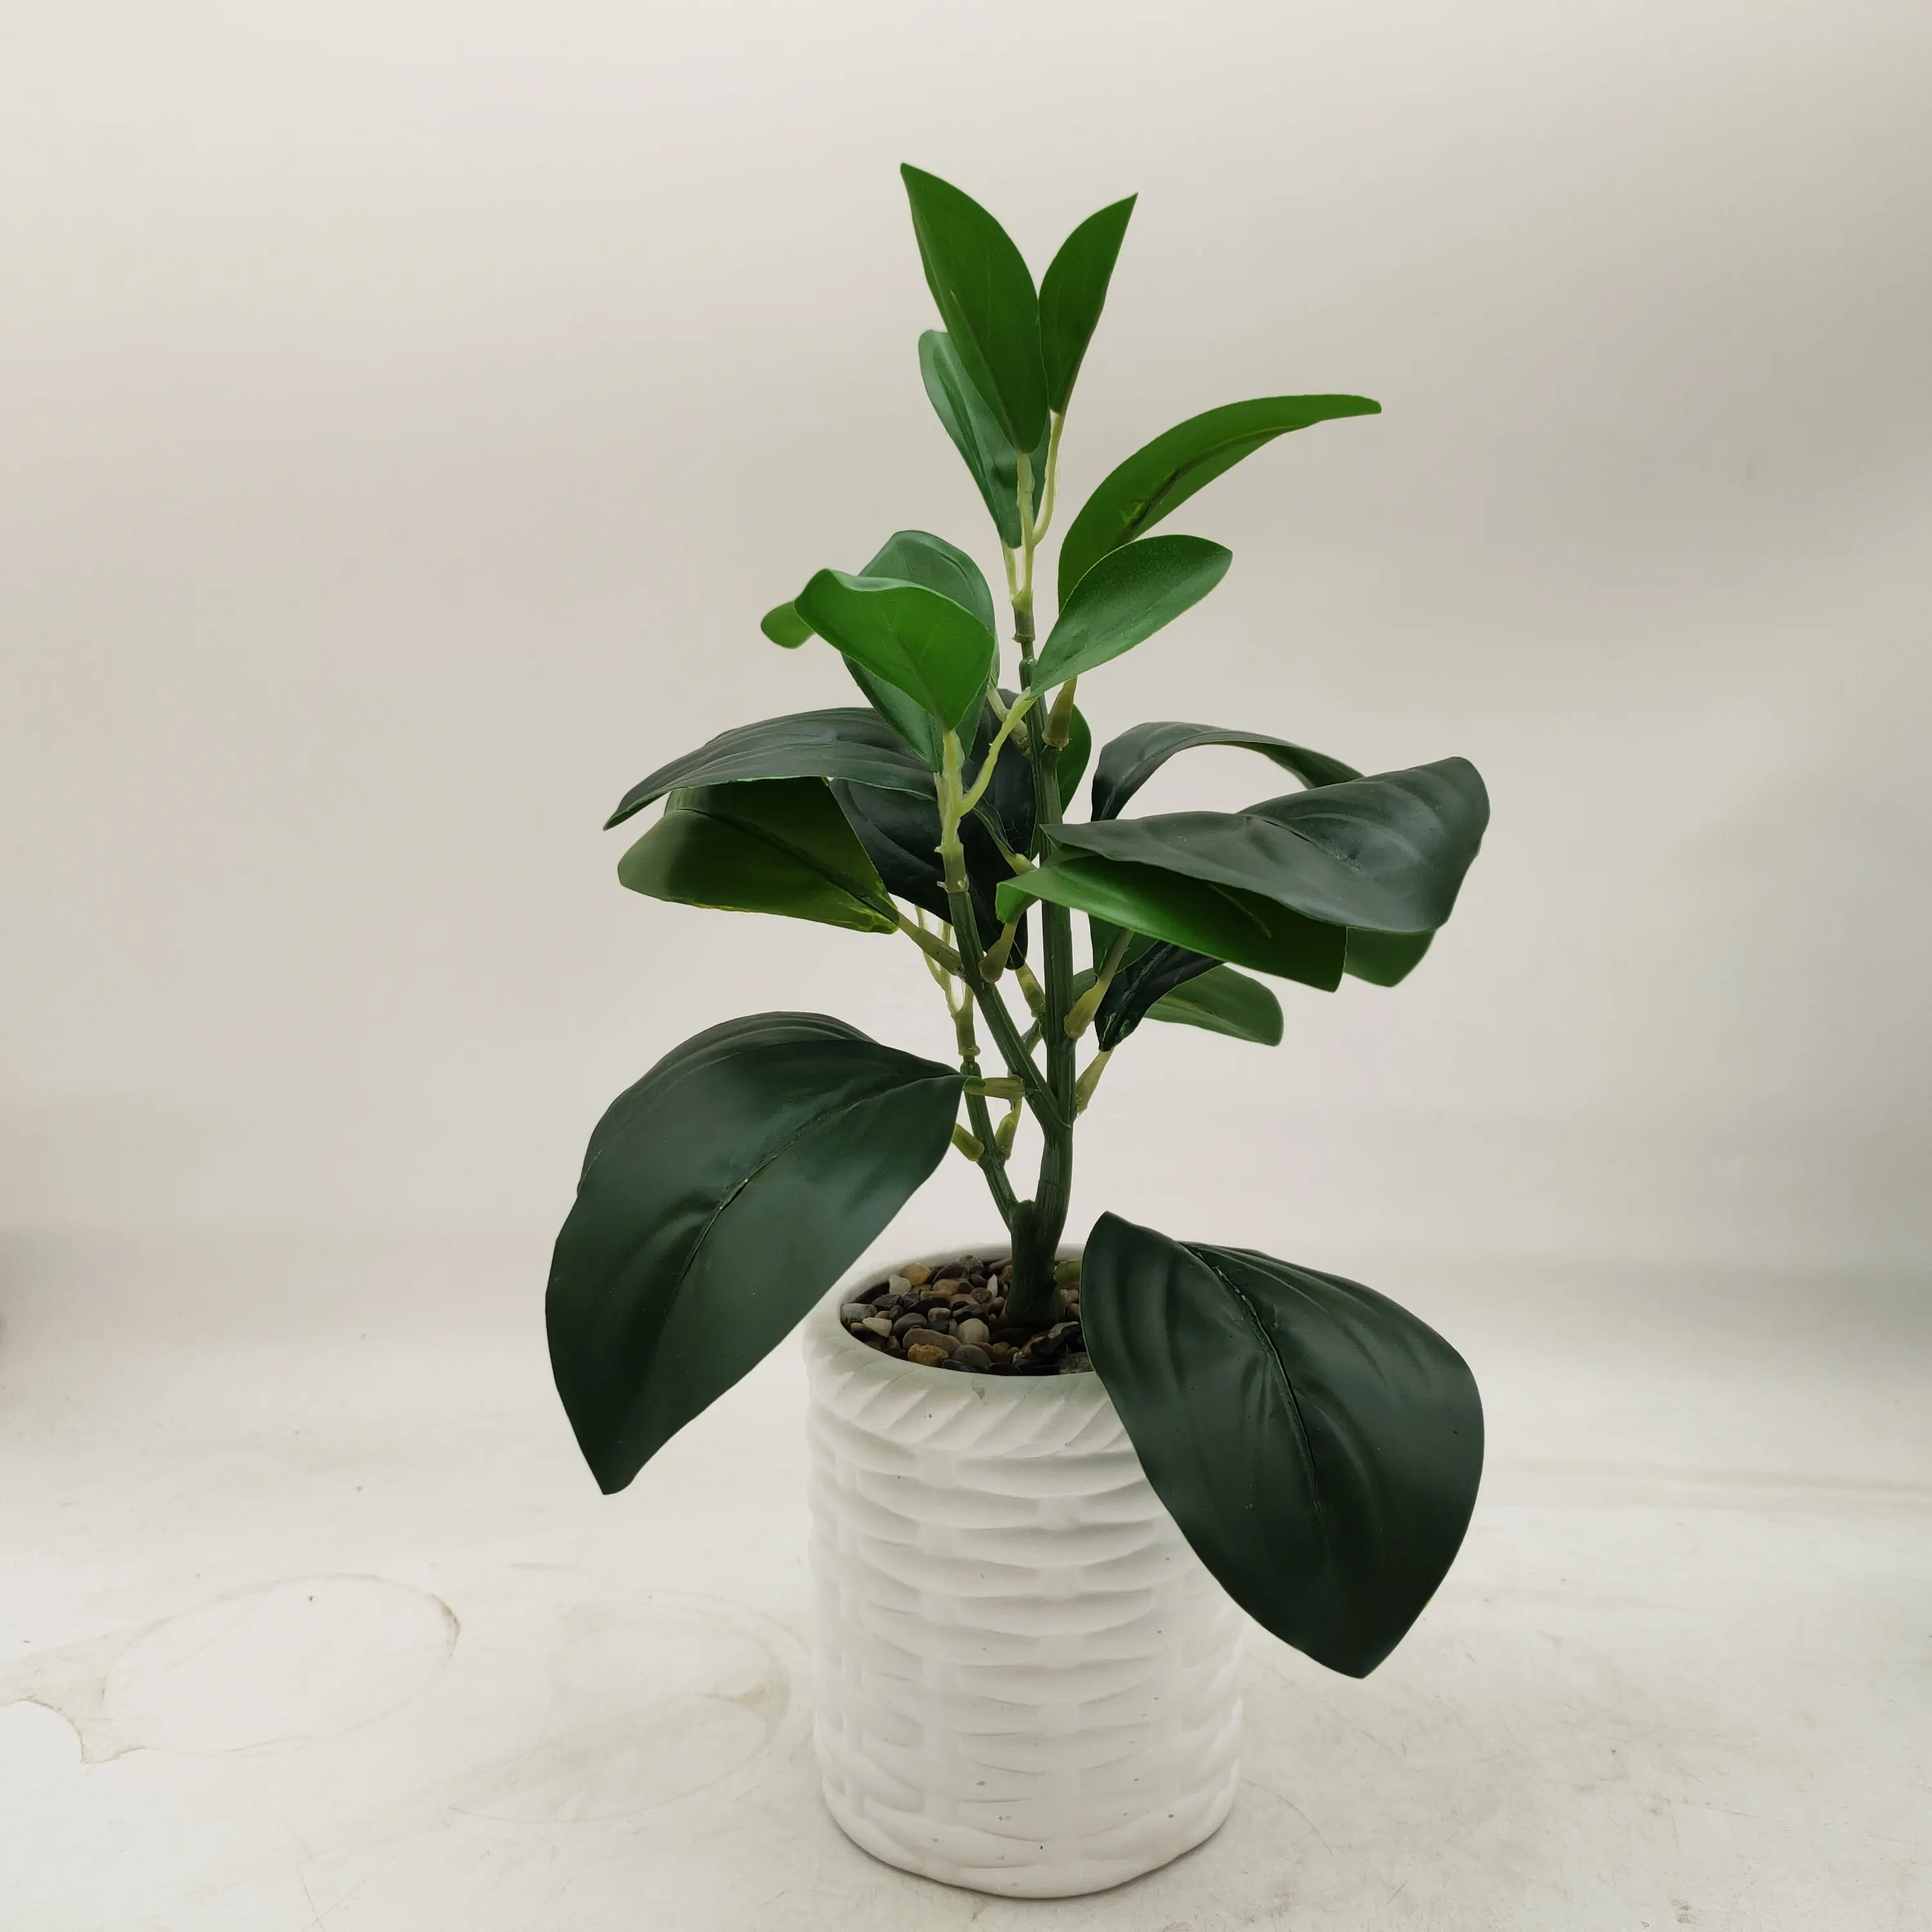 Grüne Pflanze mit Pflanzen topf Künstliches Geigen blatt Feigen baum Faux Ficus Lyrata für Home Office Dekoration